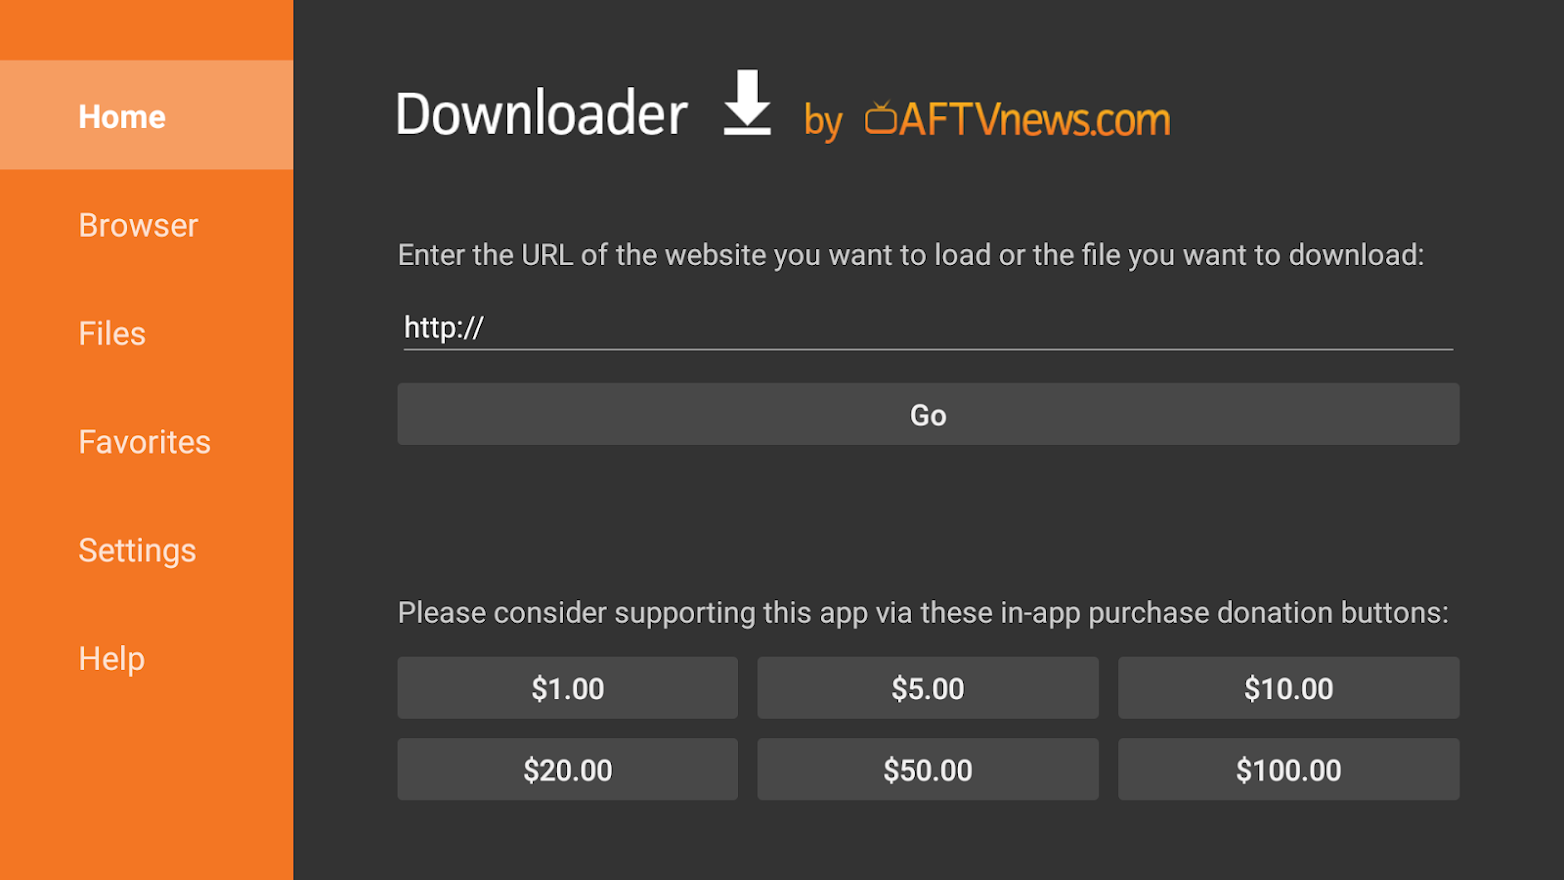 Downloader URL field to enter Bravo apk